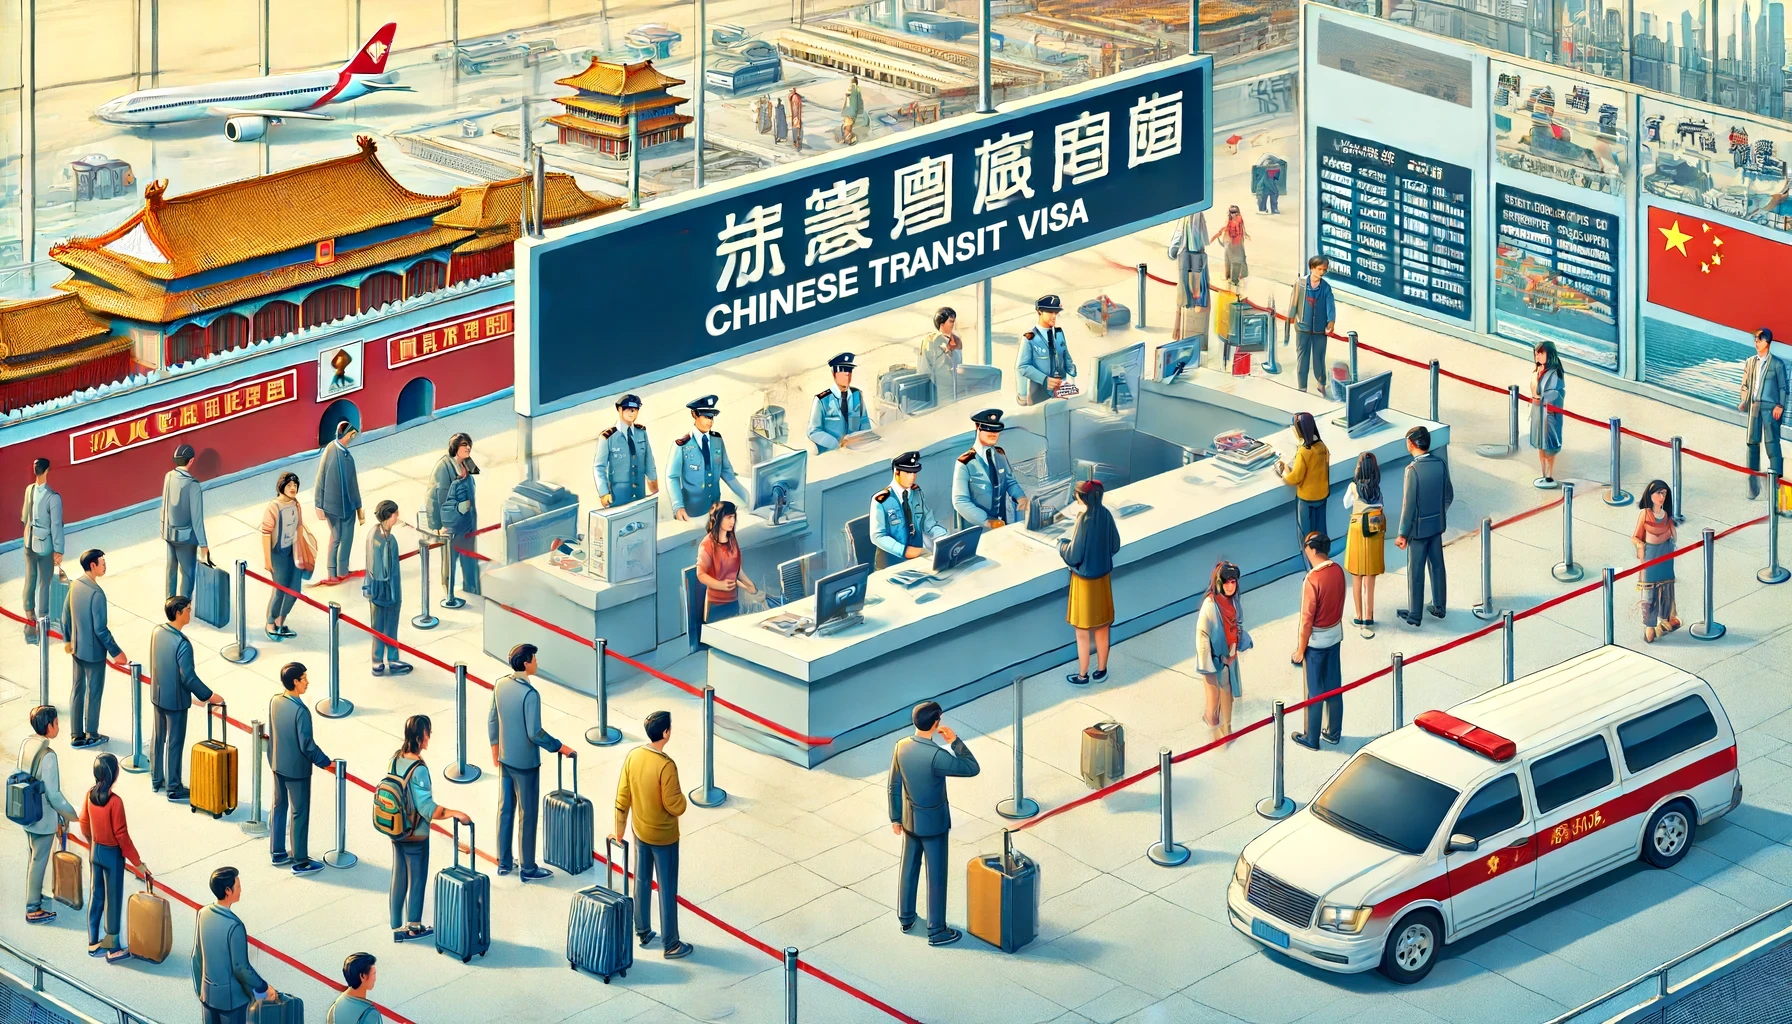 144hodinová tranzitní víza v Číně – zjednodušení vstupu pro turisty a obchodníky